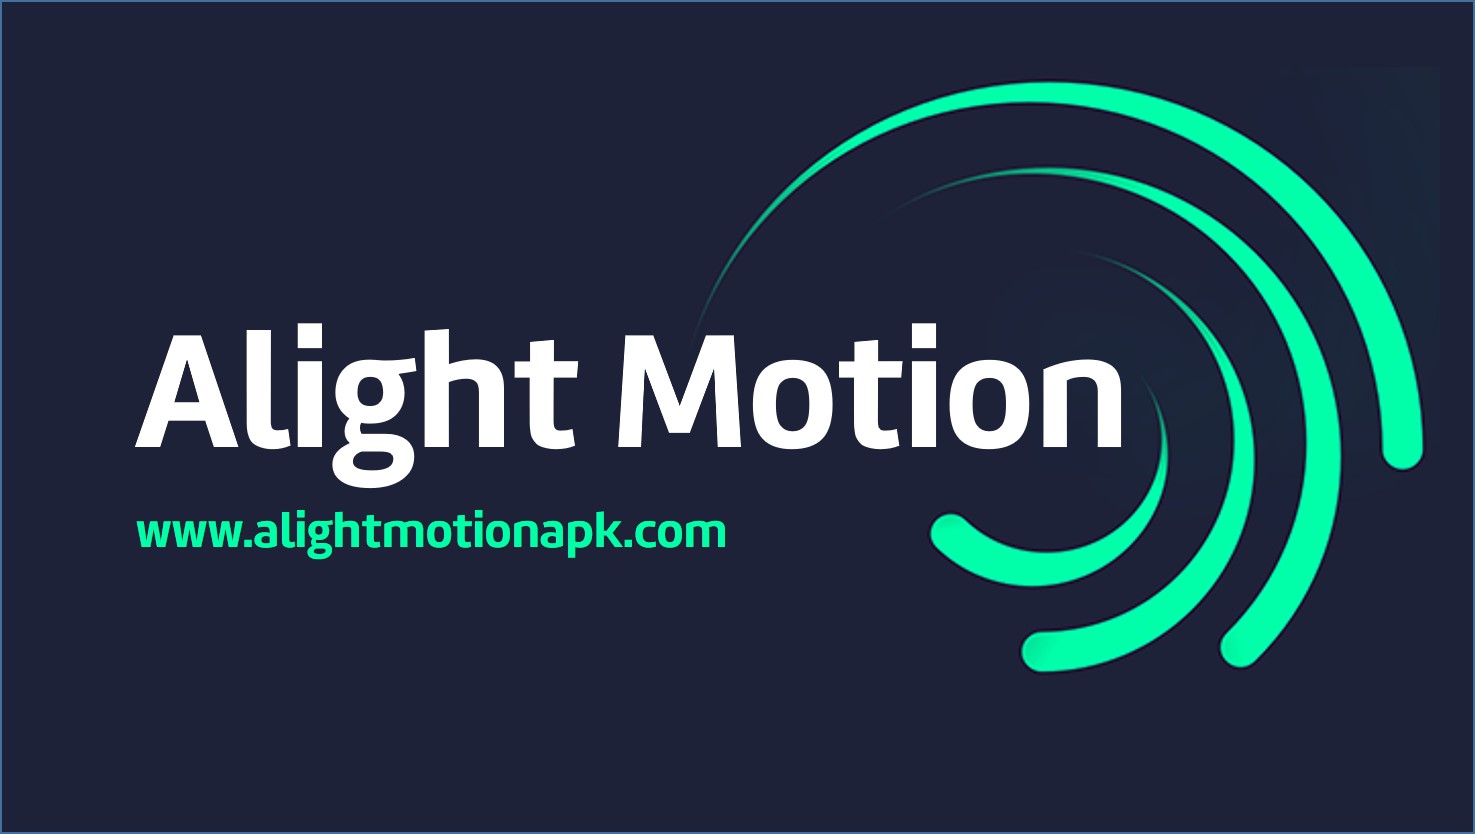 4.0 3 motion alight Alight Motion